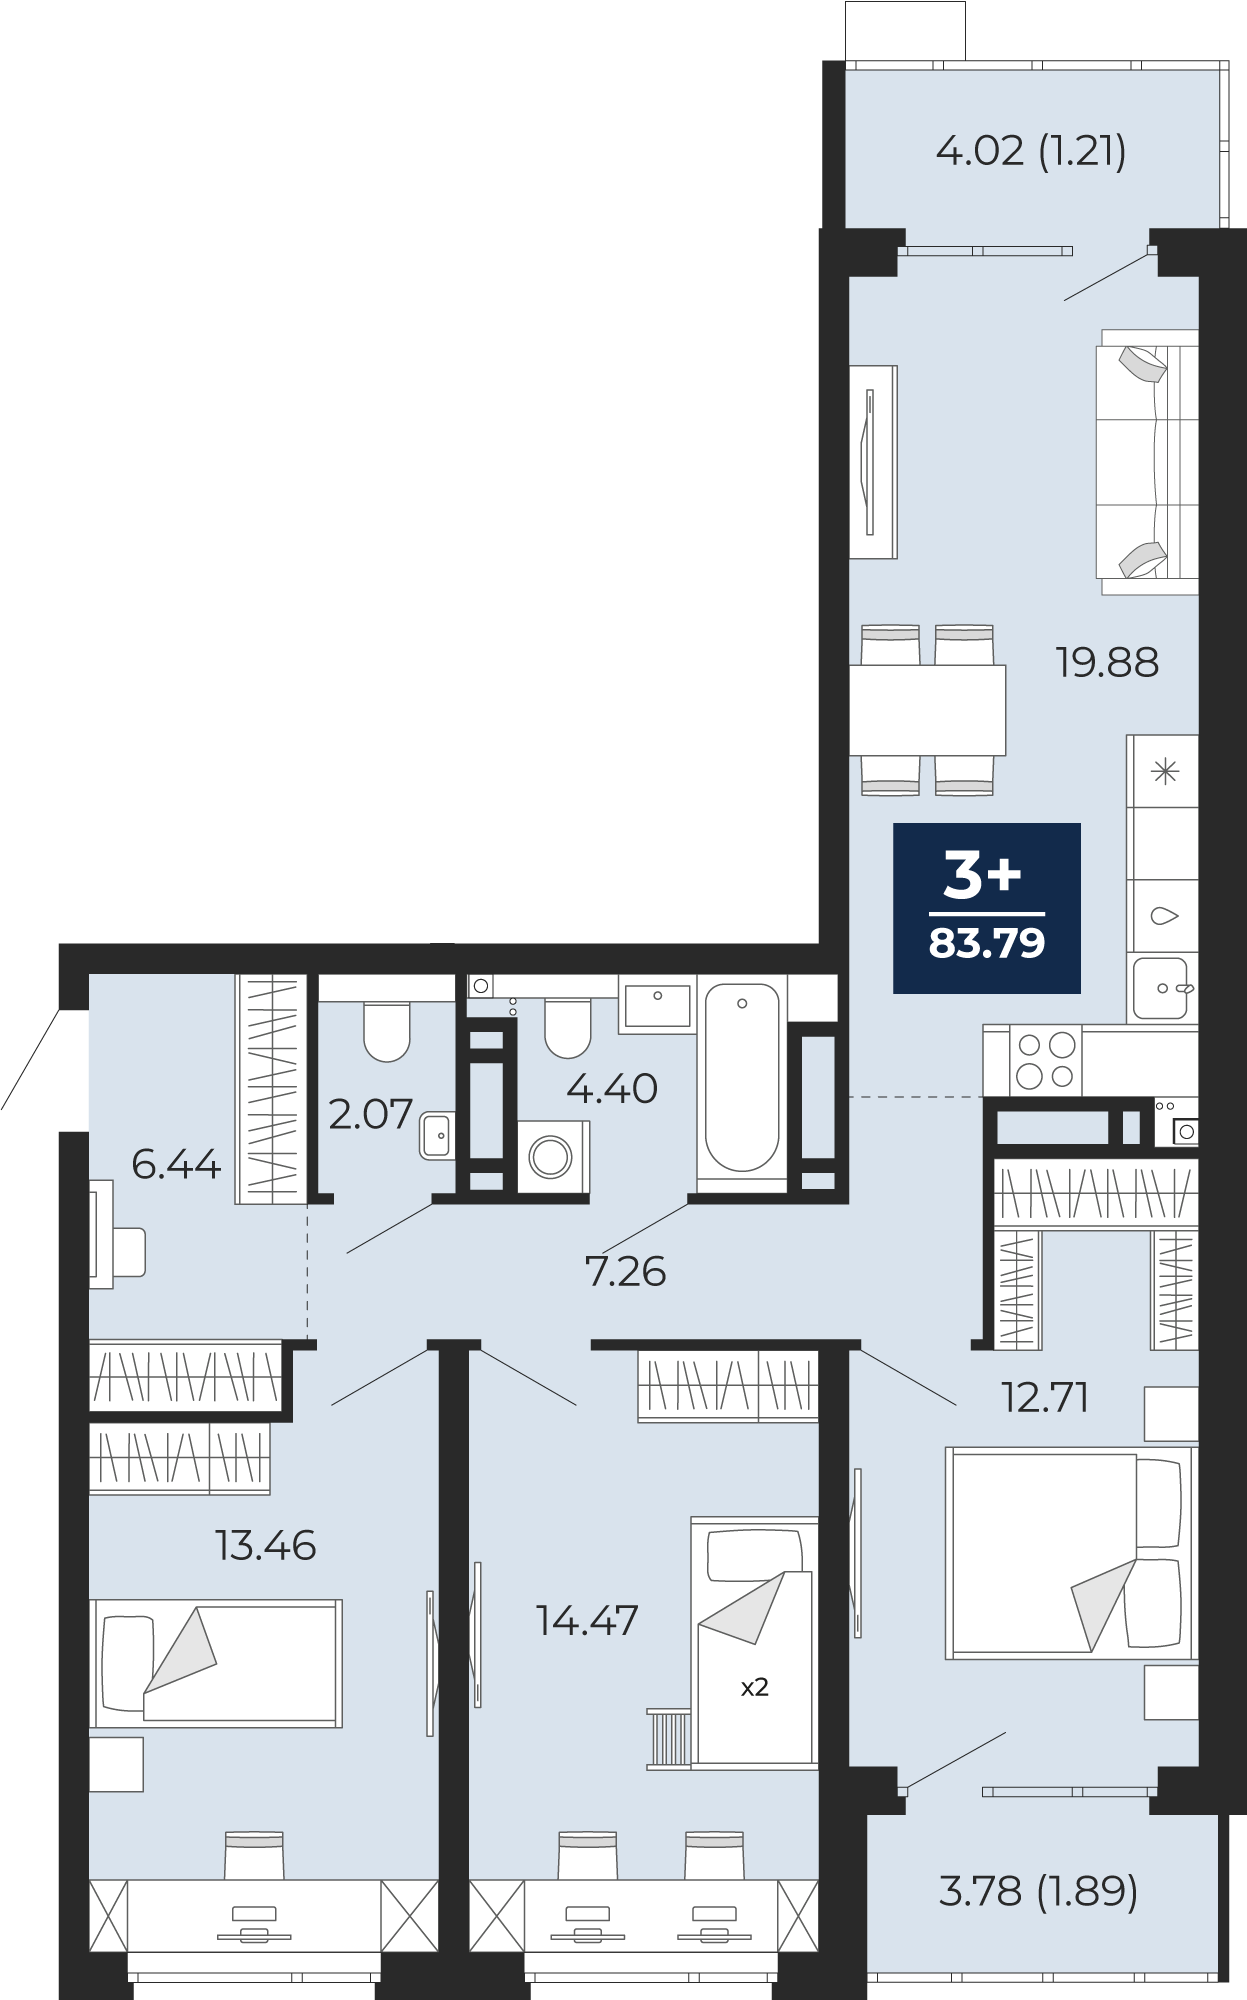 Квартира № 275, 3-комнатная, 83.79 кв. м, 17 этаж, проект «Прео», корпус ГП-72.206 по цене 9 580 000 ₽ от застройщика «ЭНКО»